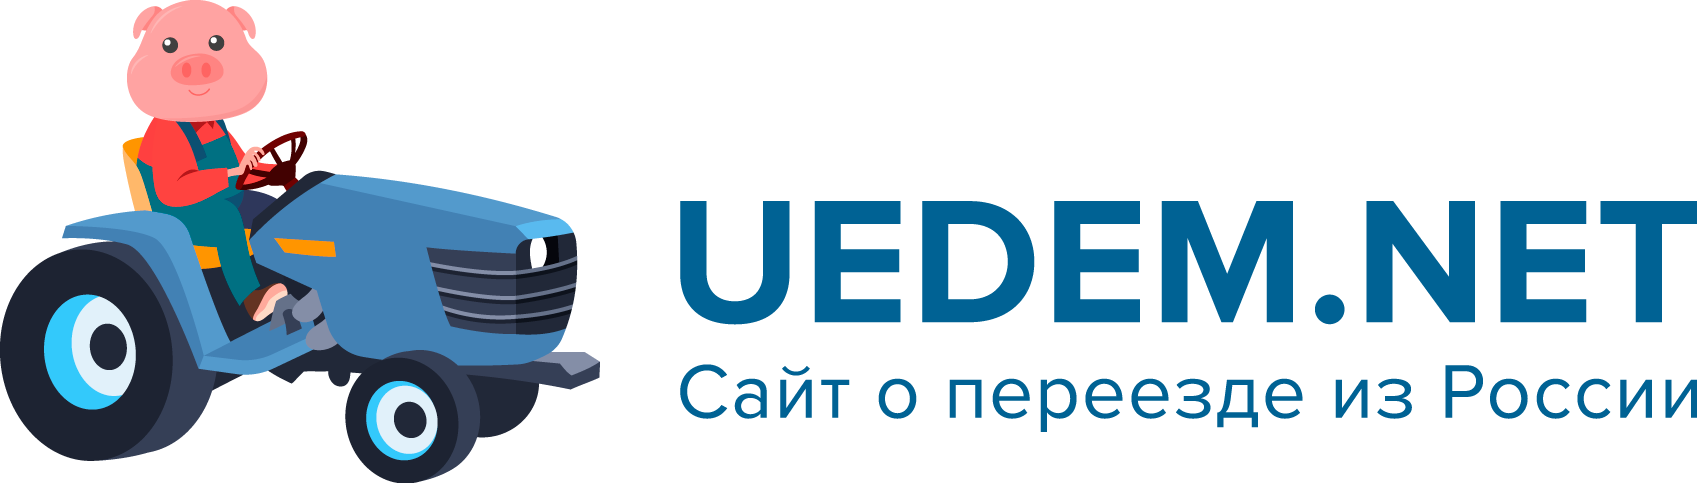 Uedem.net